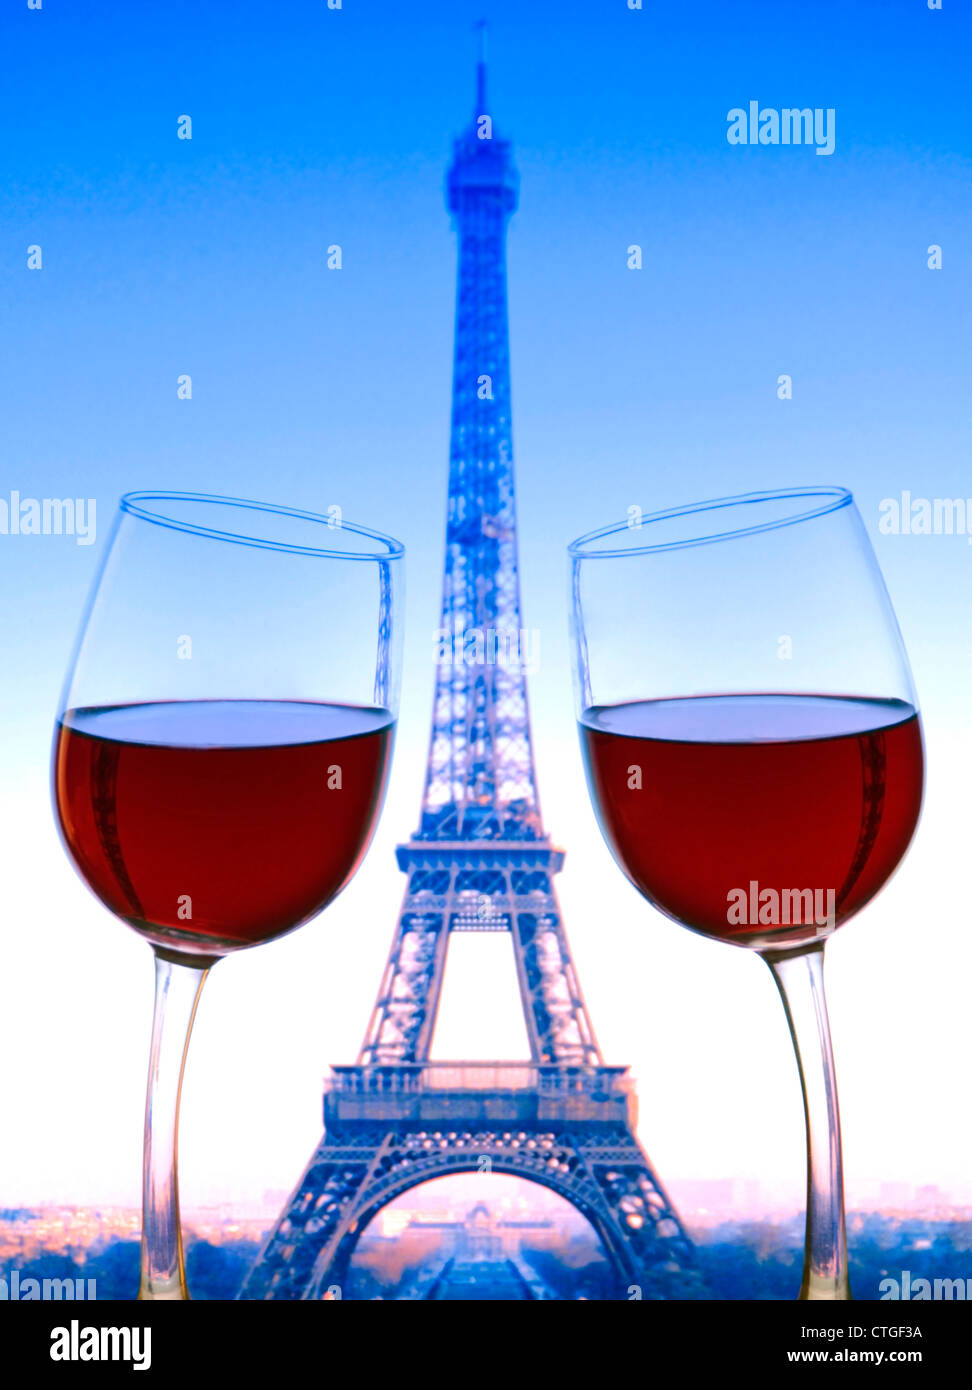 PARIGI SI DIVERTE I bicchieri di vino rosso si appoggiano l'uno verso l'altro con la Torre Eiffel dietro Parigi Francia. Colori bandiera tricolore francese Foto Stock